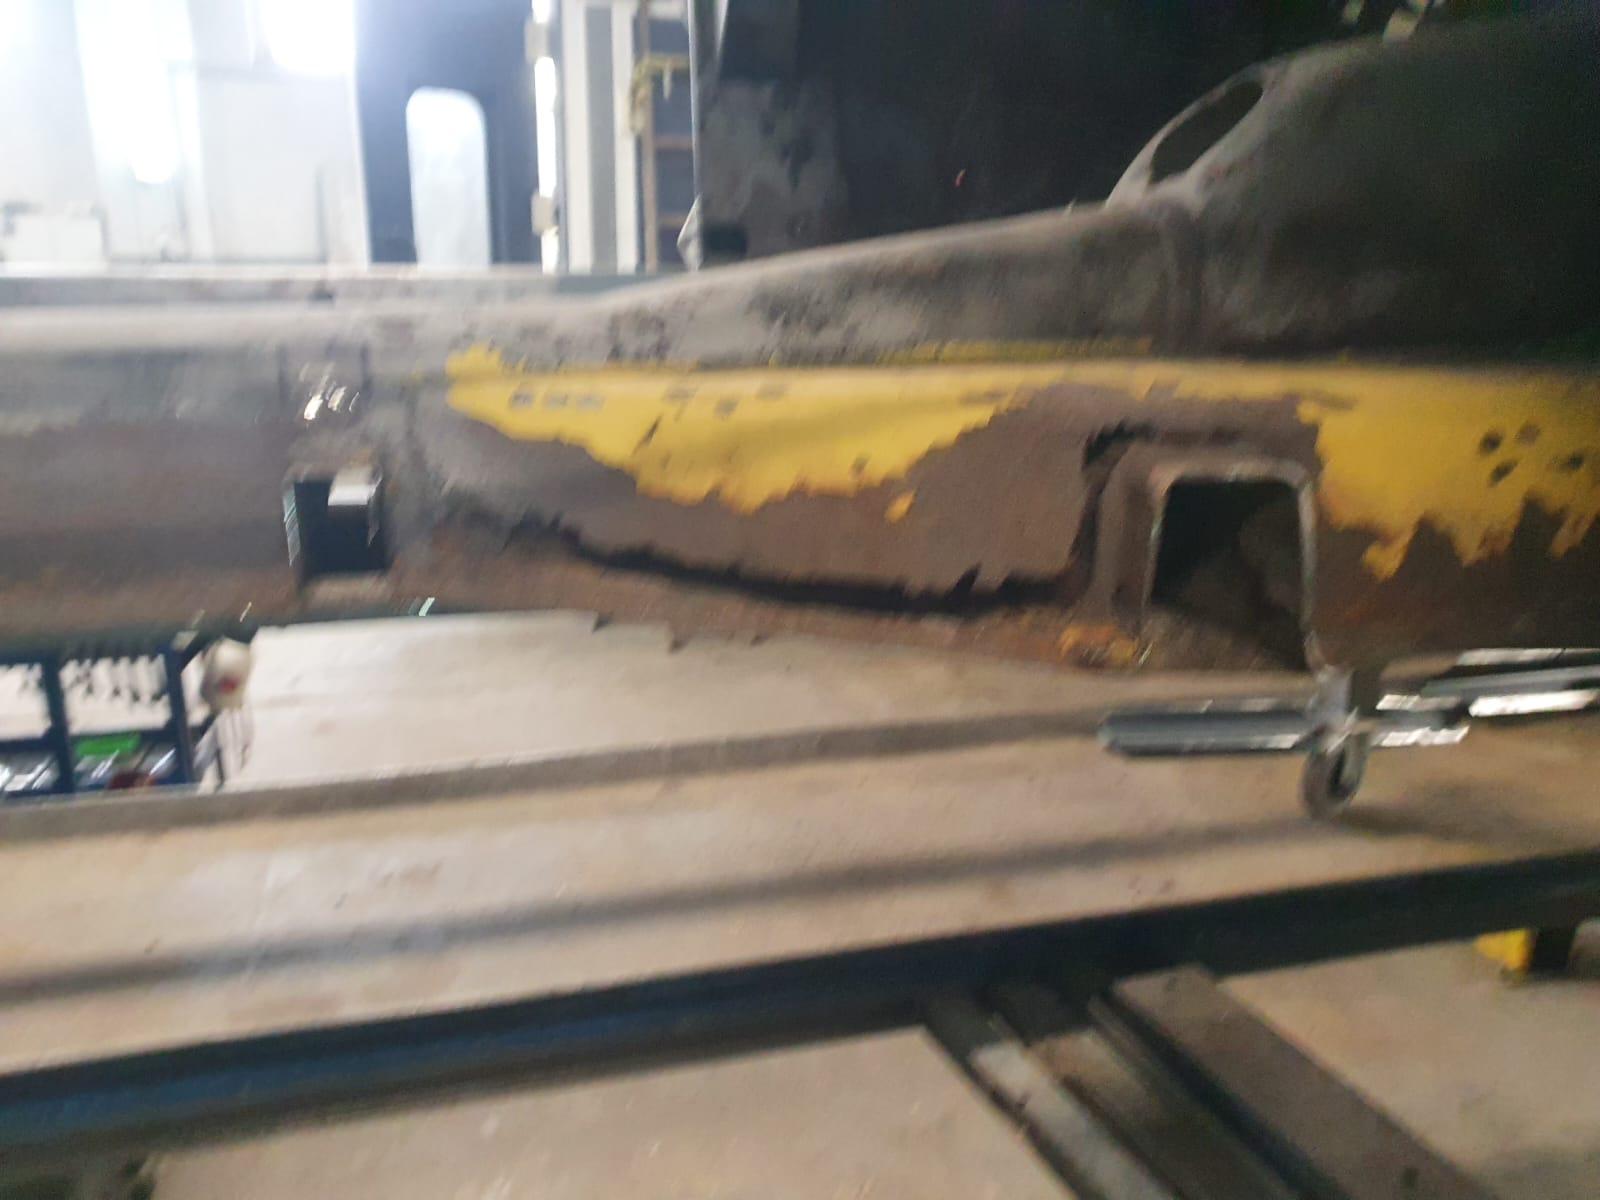 restauration restaurierung mercedes benz mb w121 190sl karosseriearbeiten